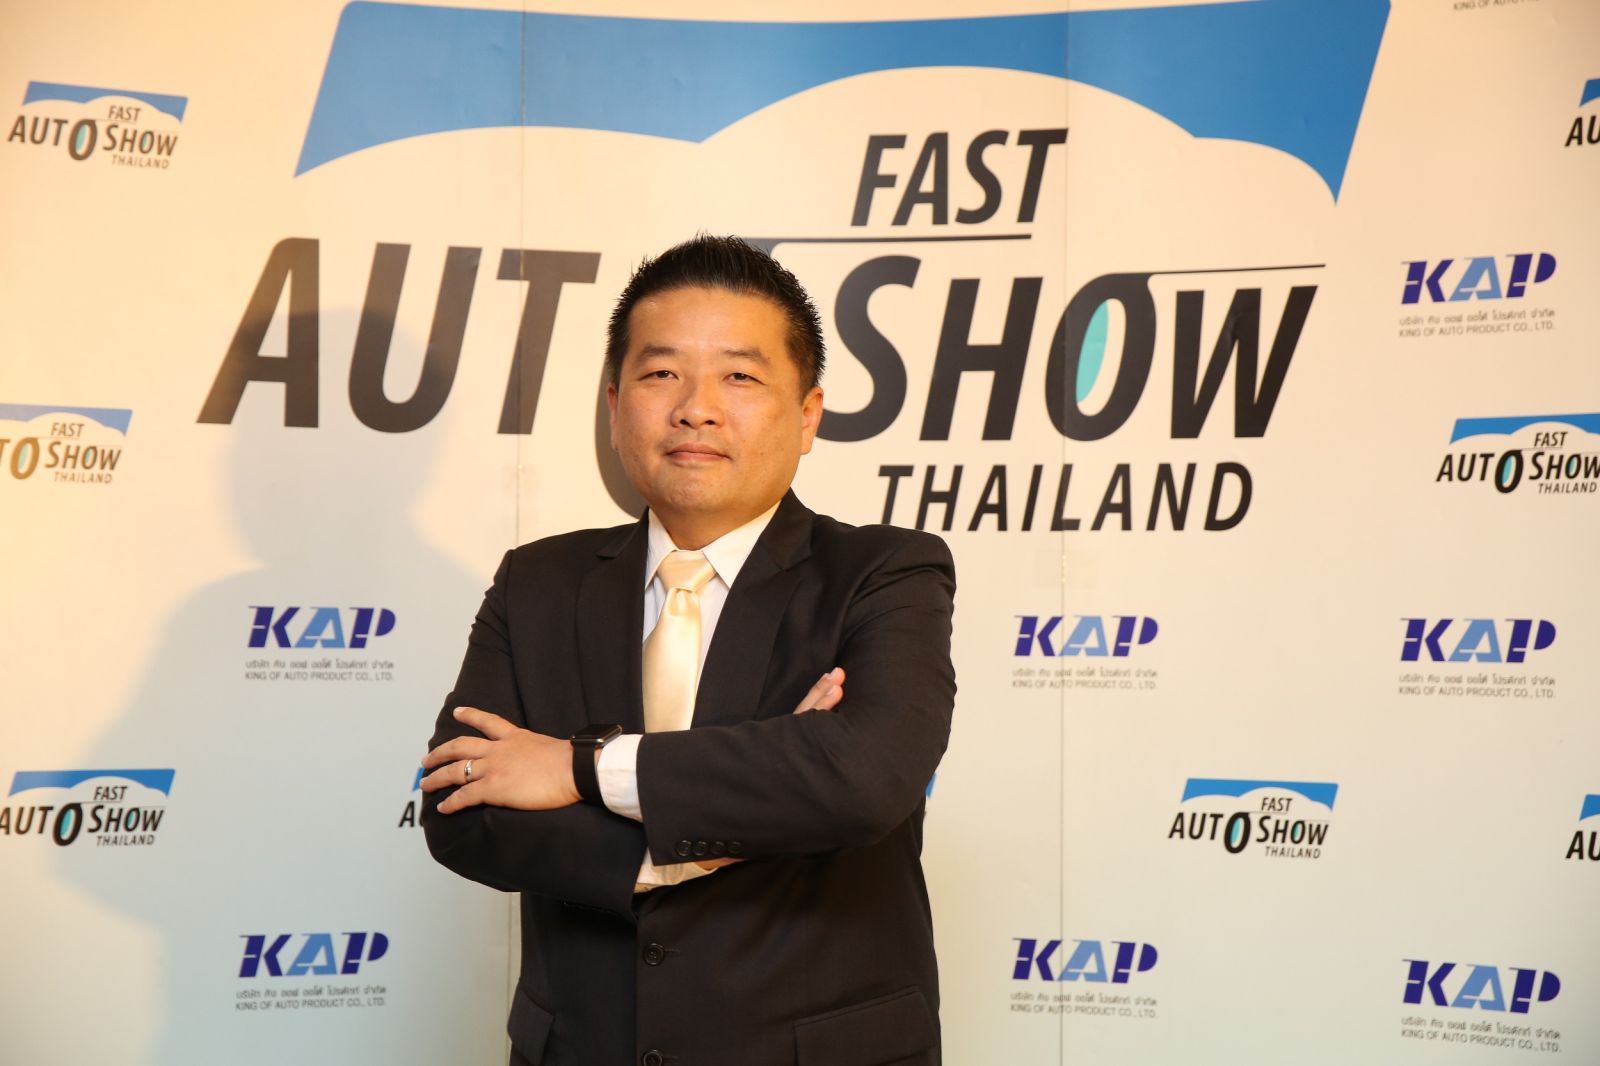 Fast Auto Show